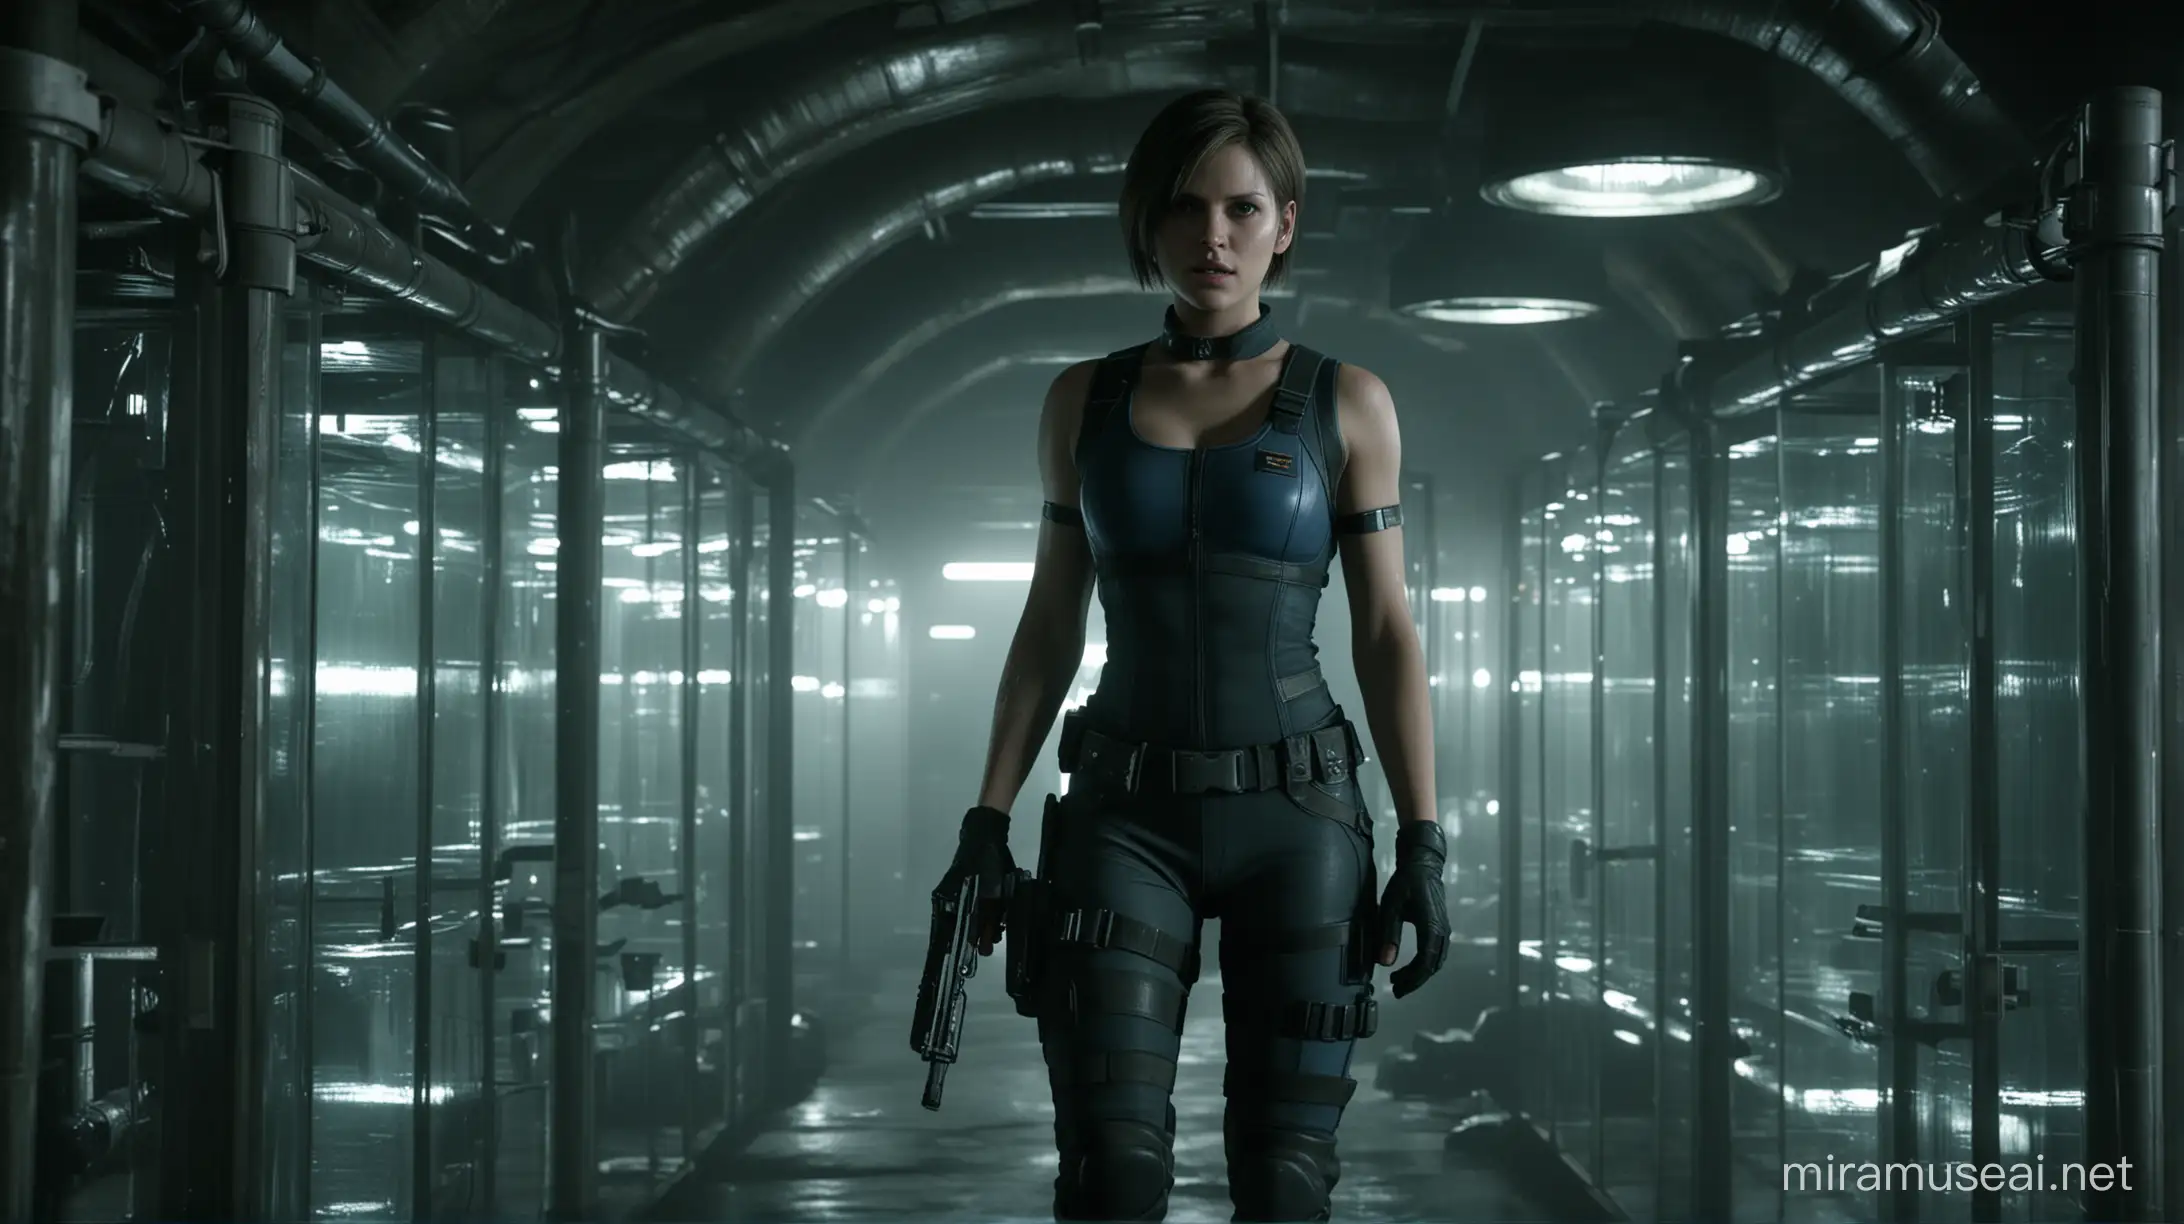 Jill Valentine Explores Underground Lab with Mutants in Glass Tubes in Dark Cinematic Scene